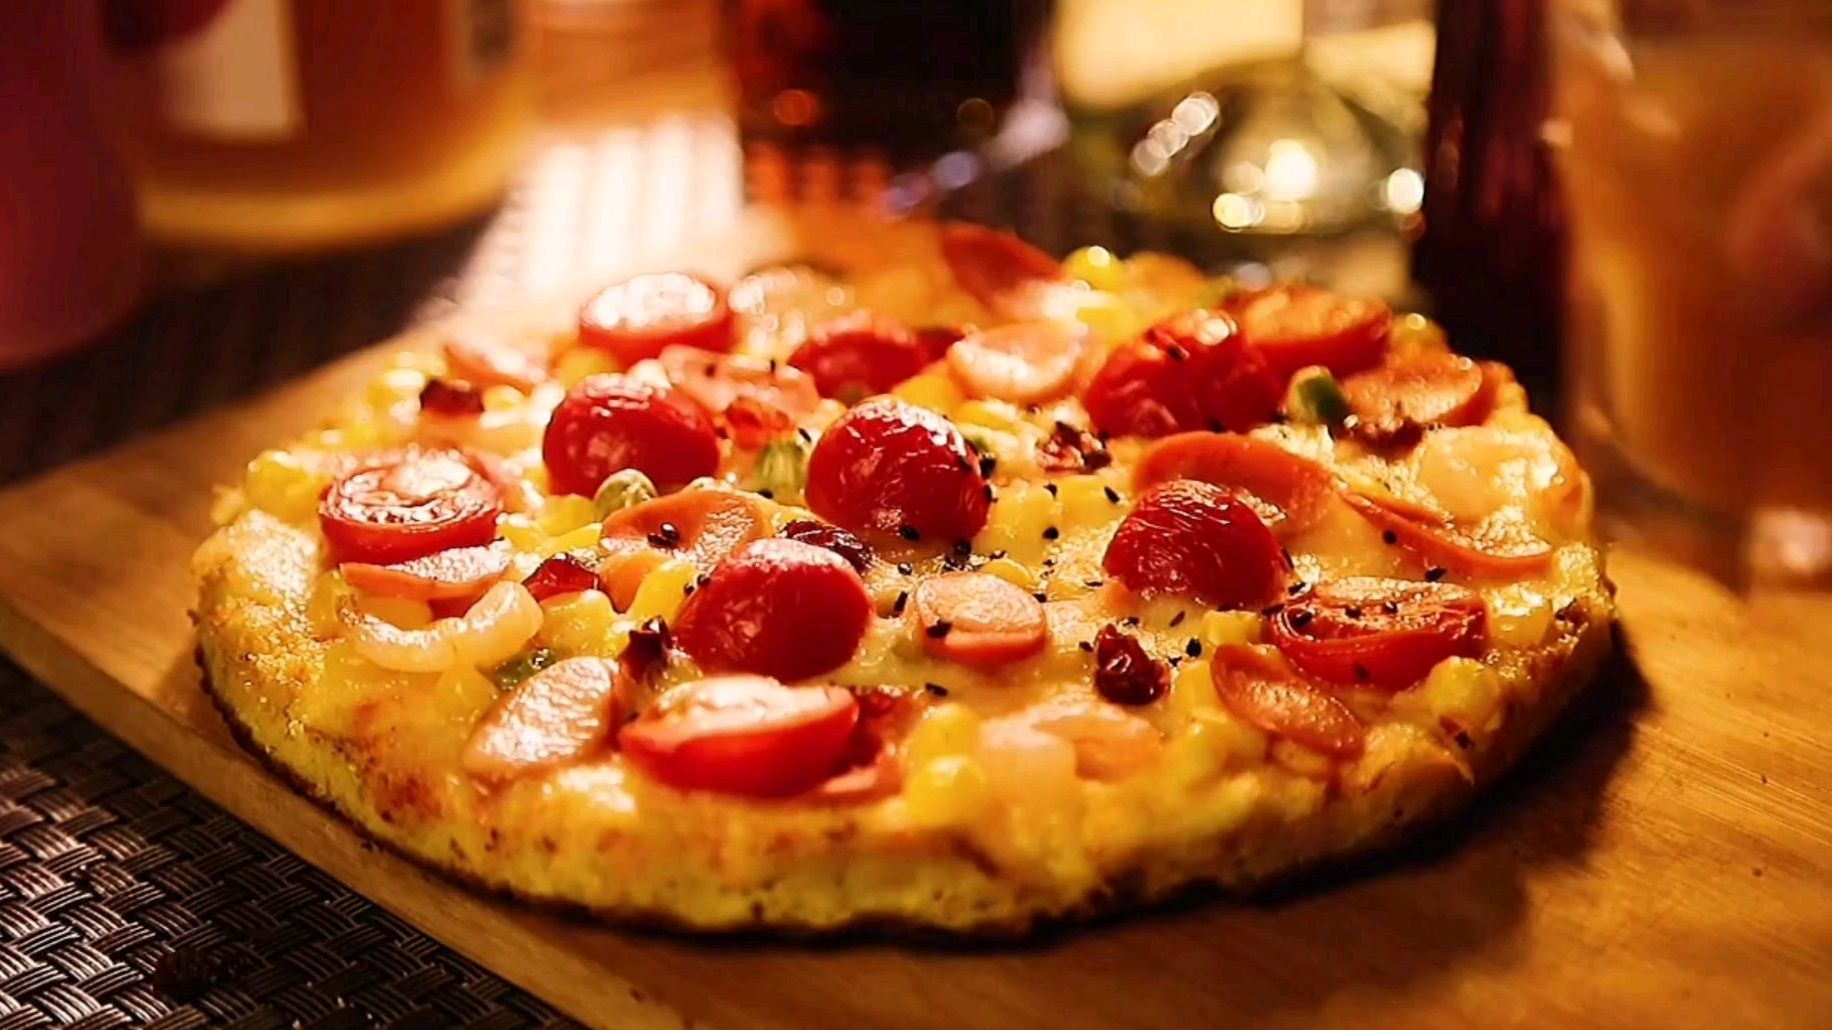 披萨上面一般都放什么蔬菜水果好吃 披萨上放什么食物最好吃